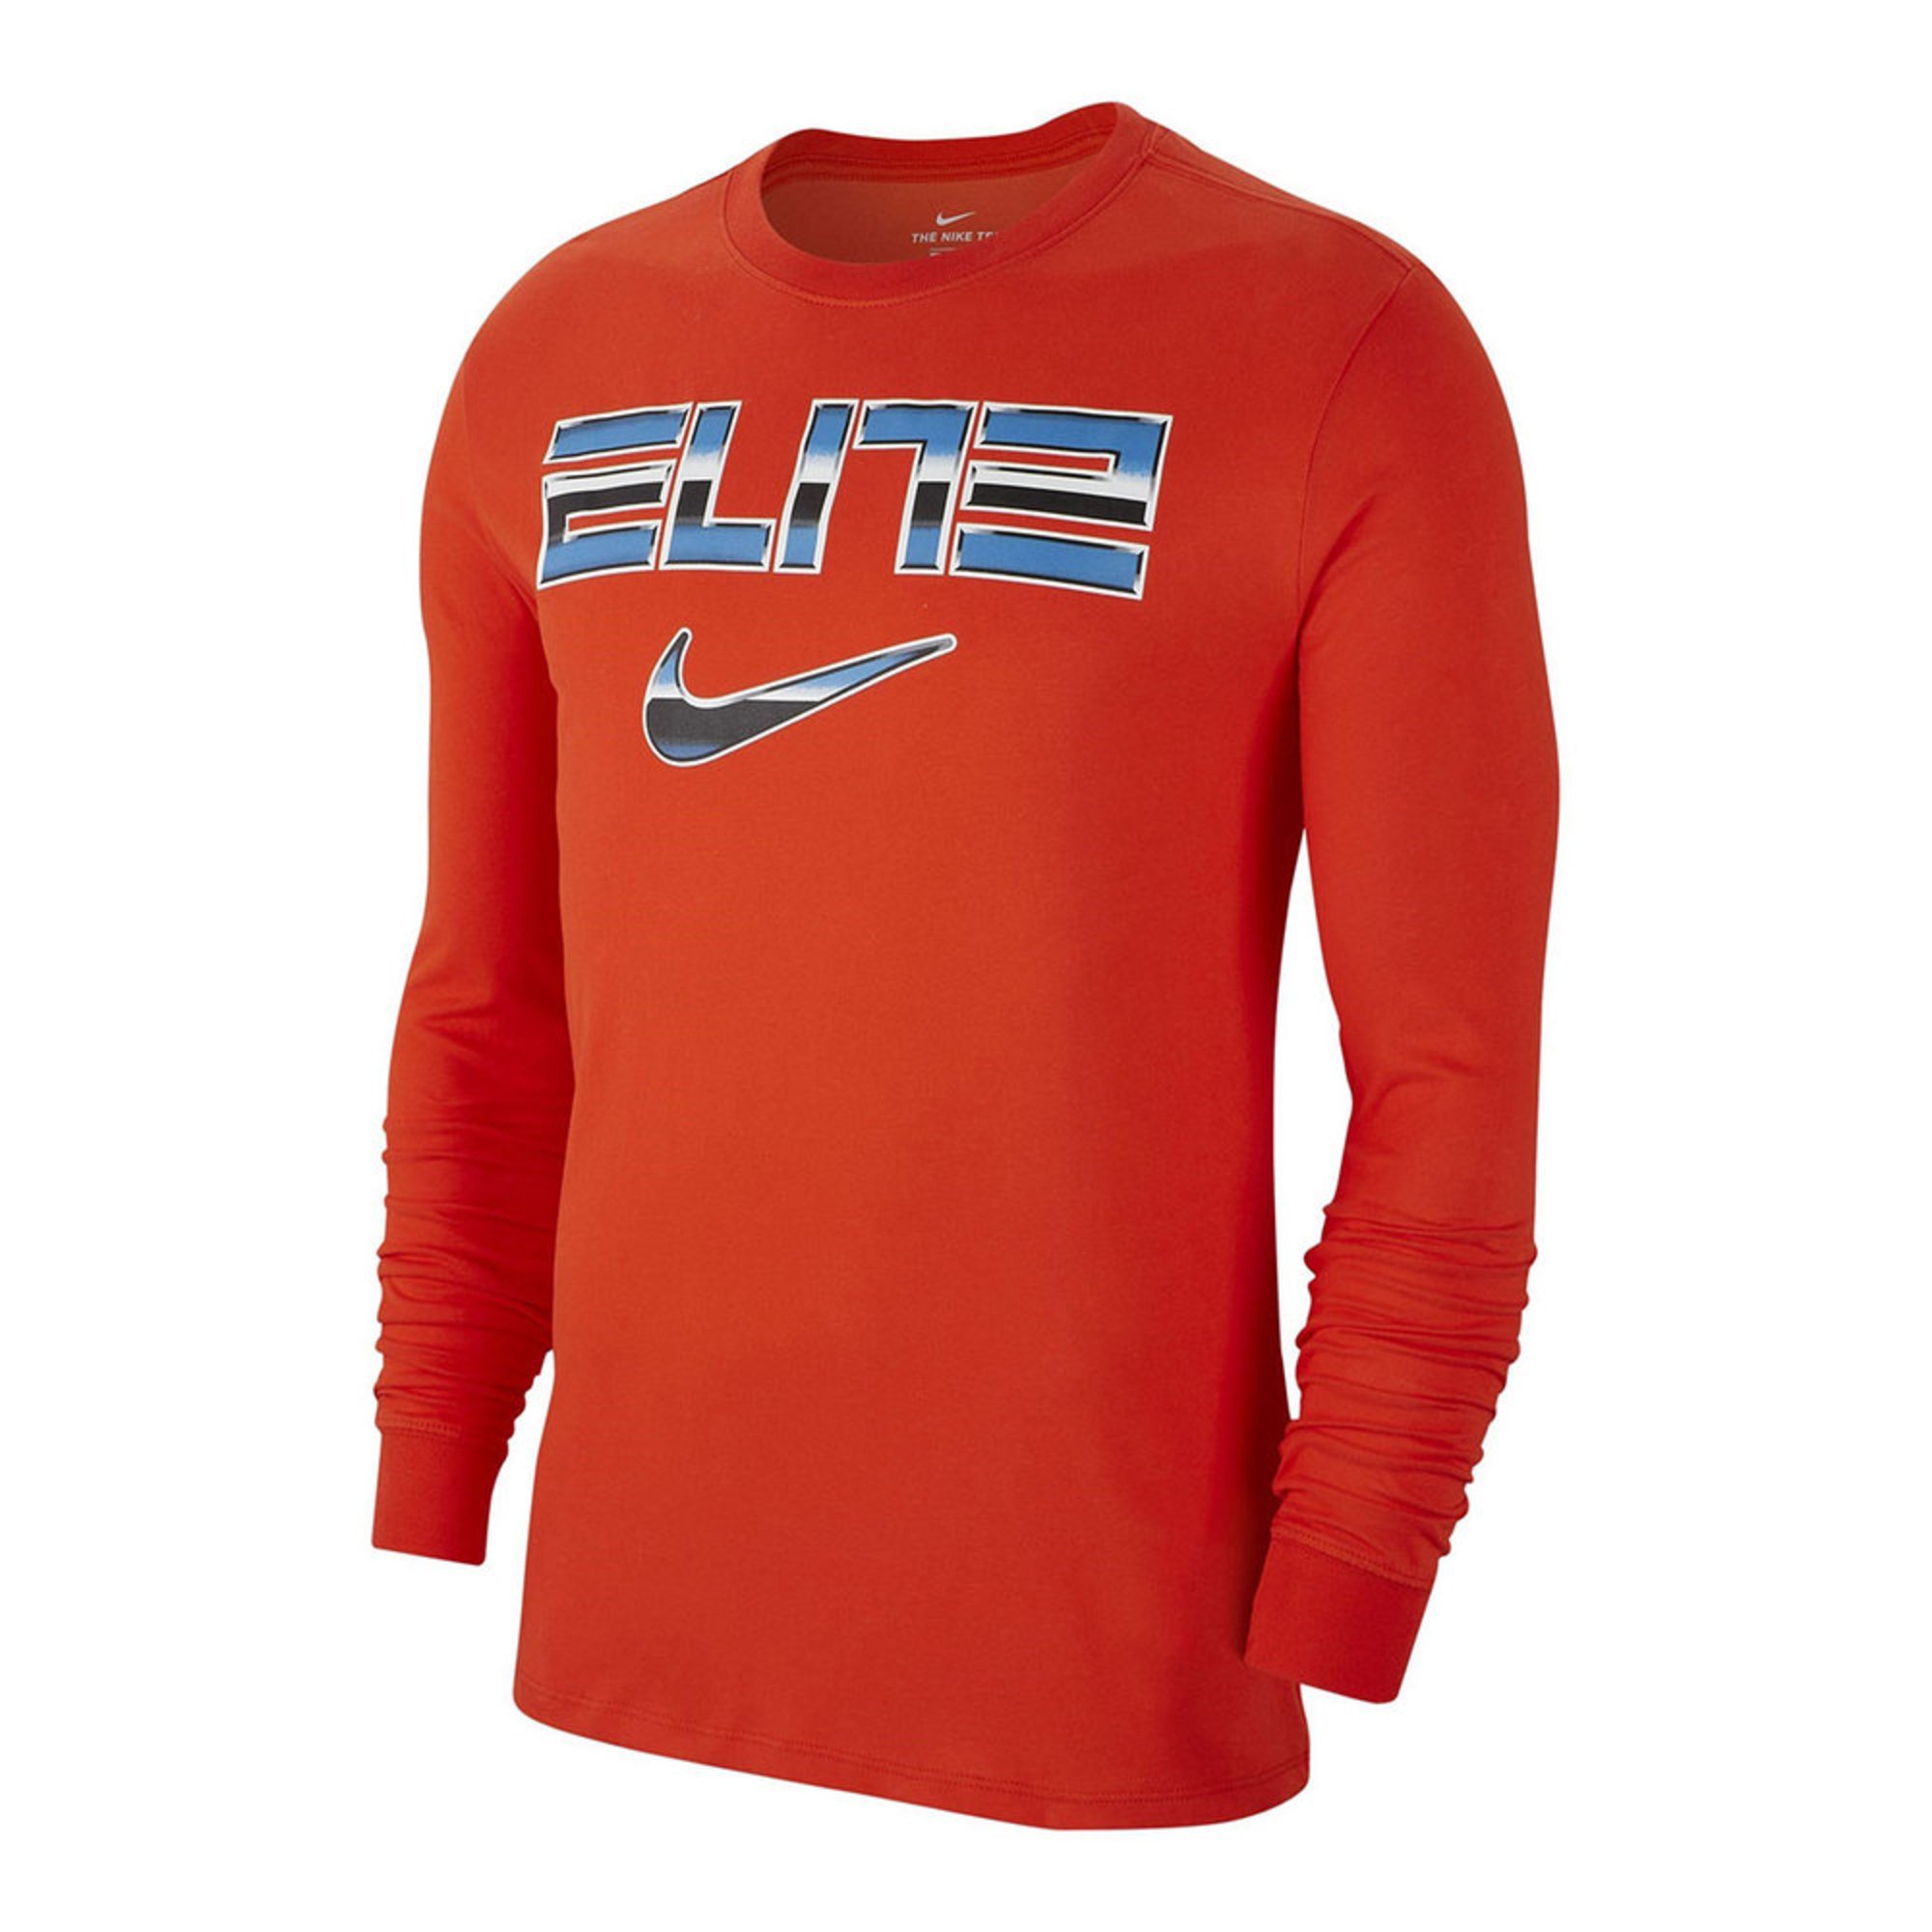 Nike Men's Basketball Elite Dry-fit Long Sleeve Tee | Active Tees ...